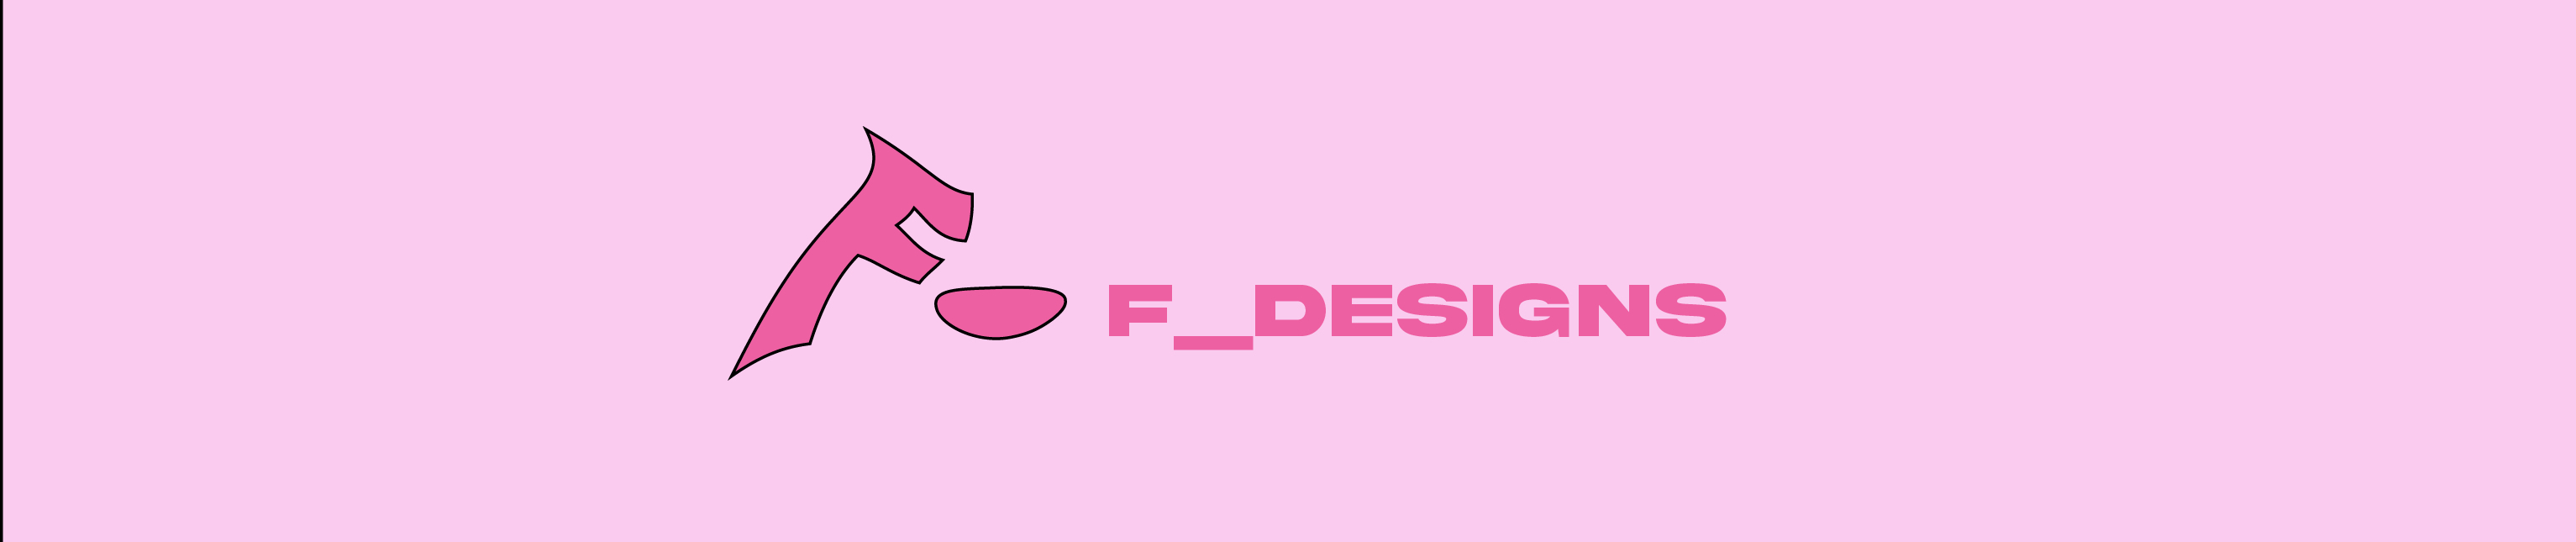 F _Designs504's profile banner